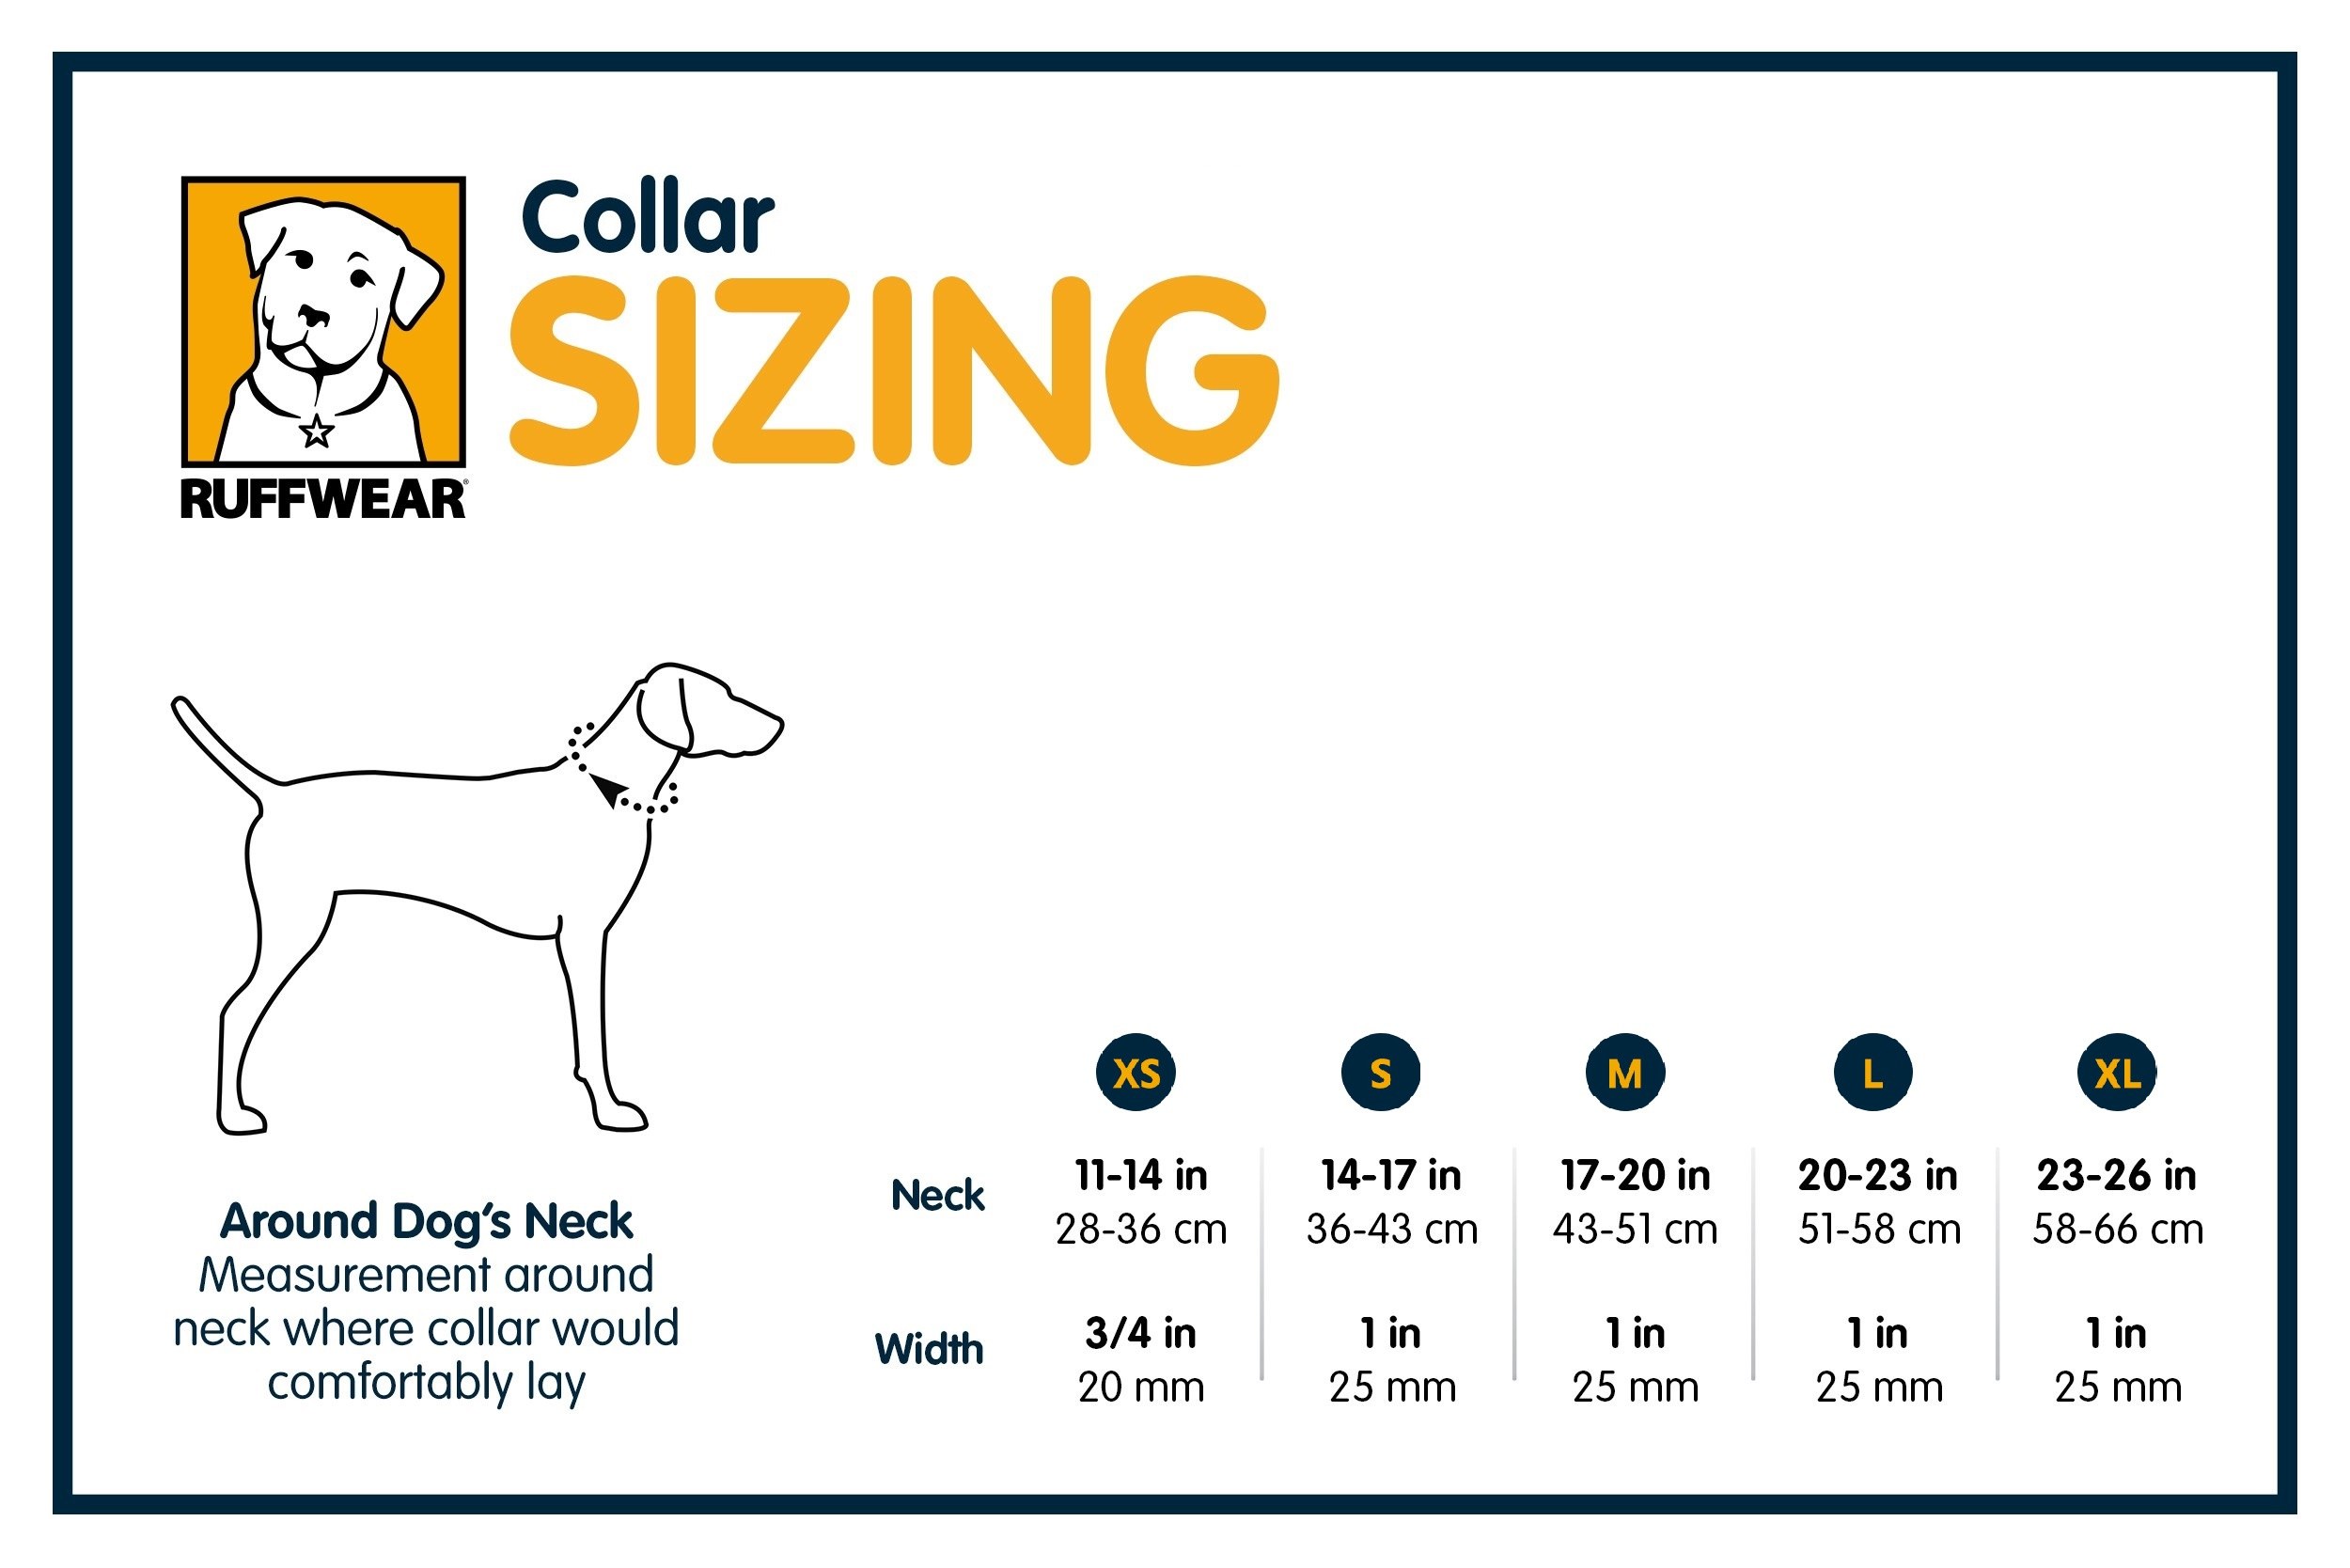 Ruffwear Dog Boots Size Chart